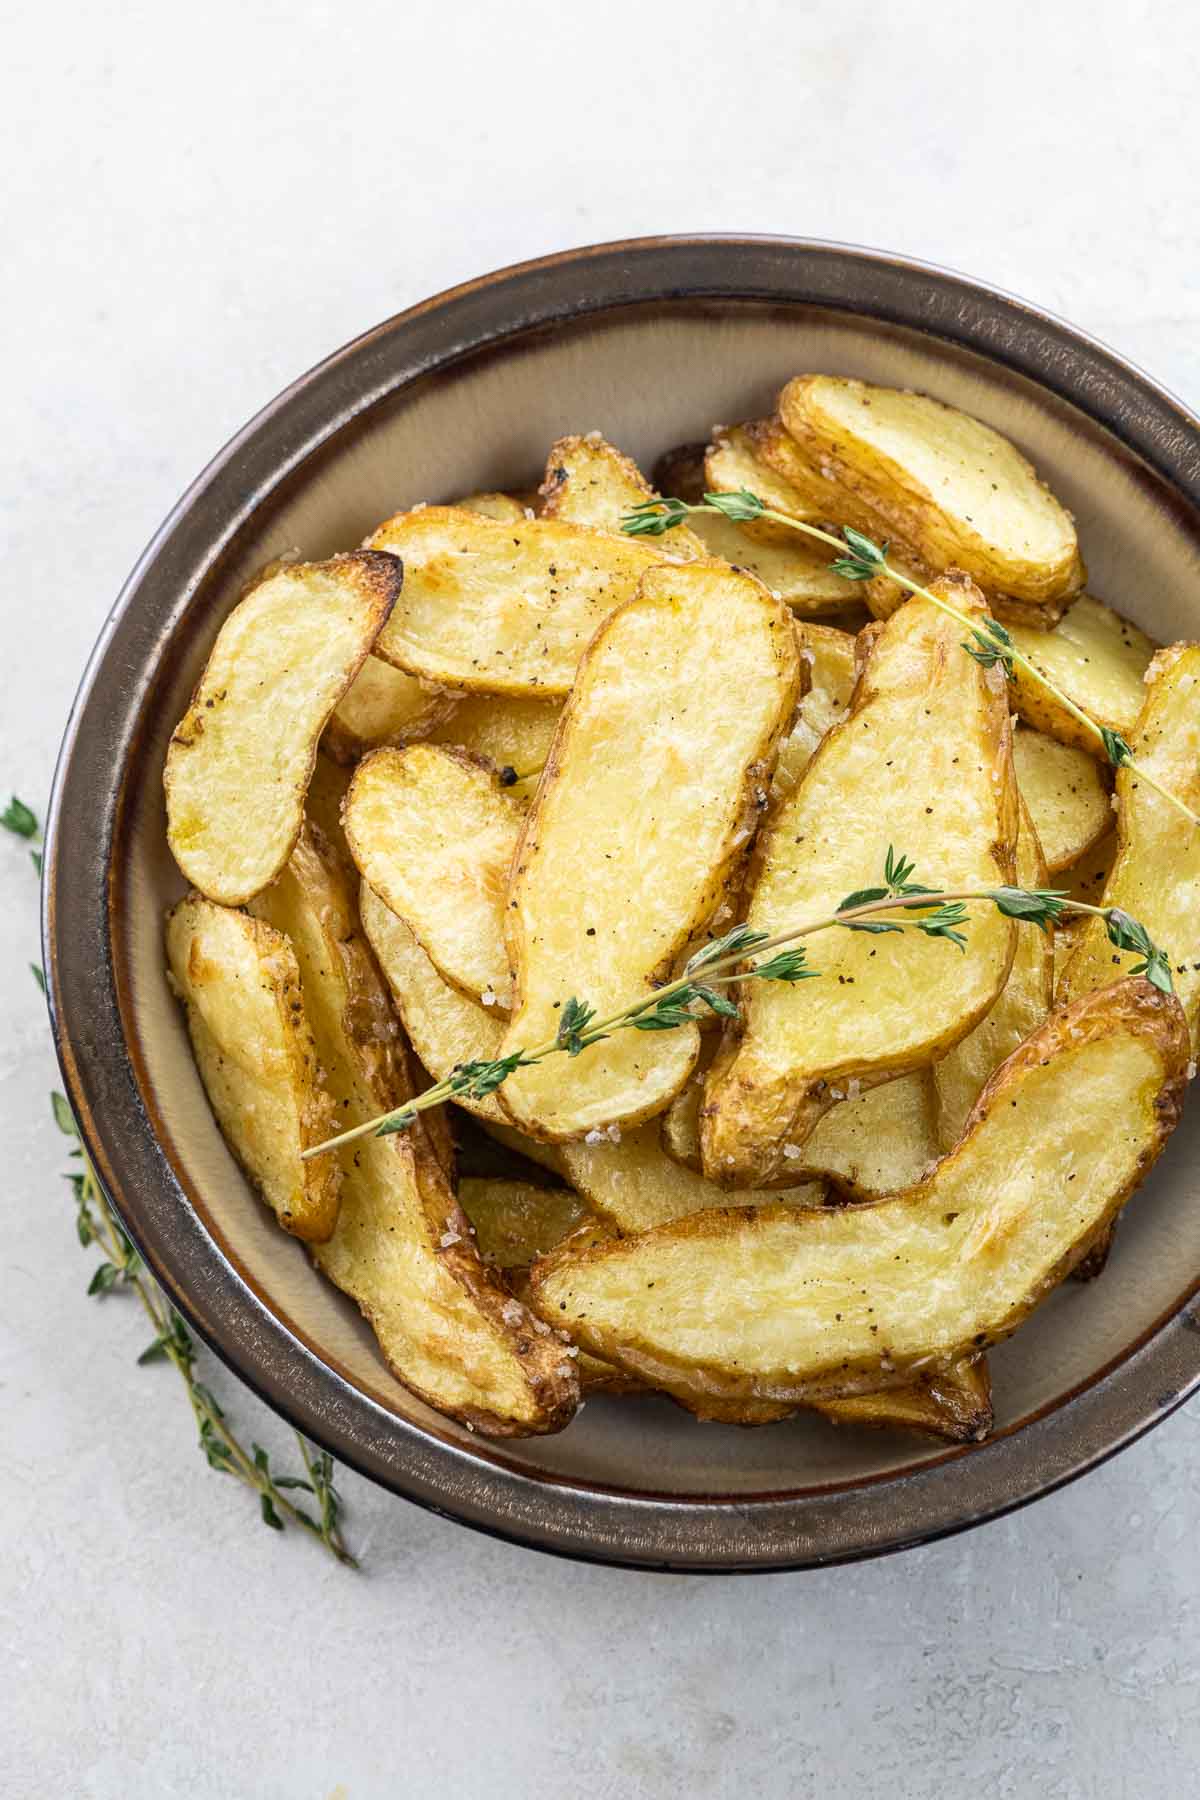 Salt and Vinegar Fingerling Potatoes